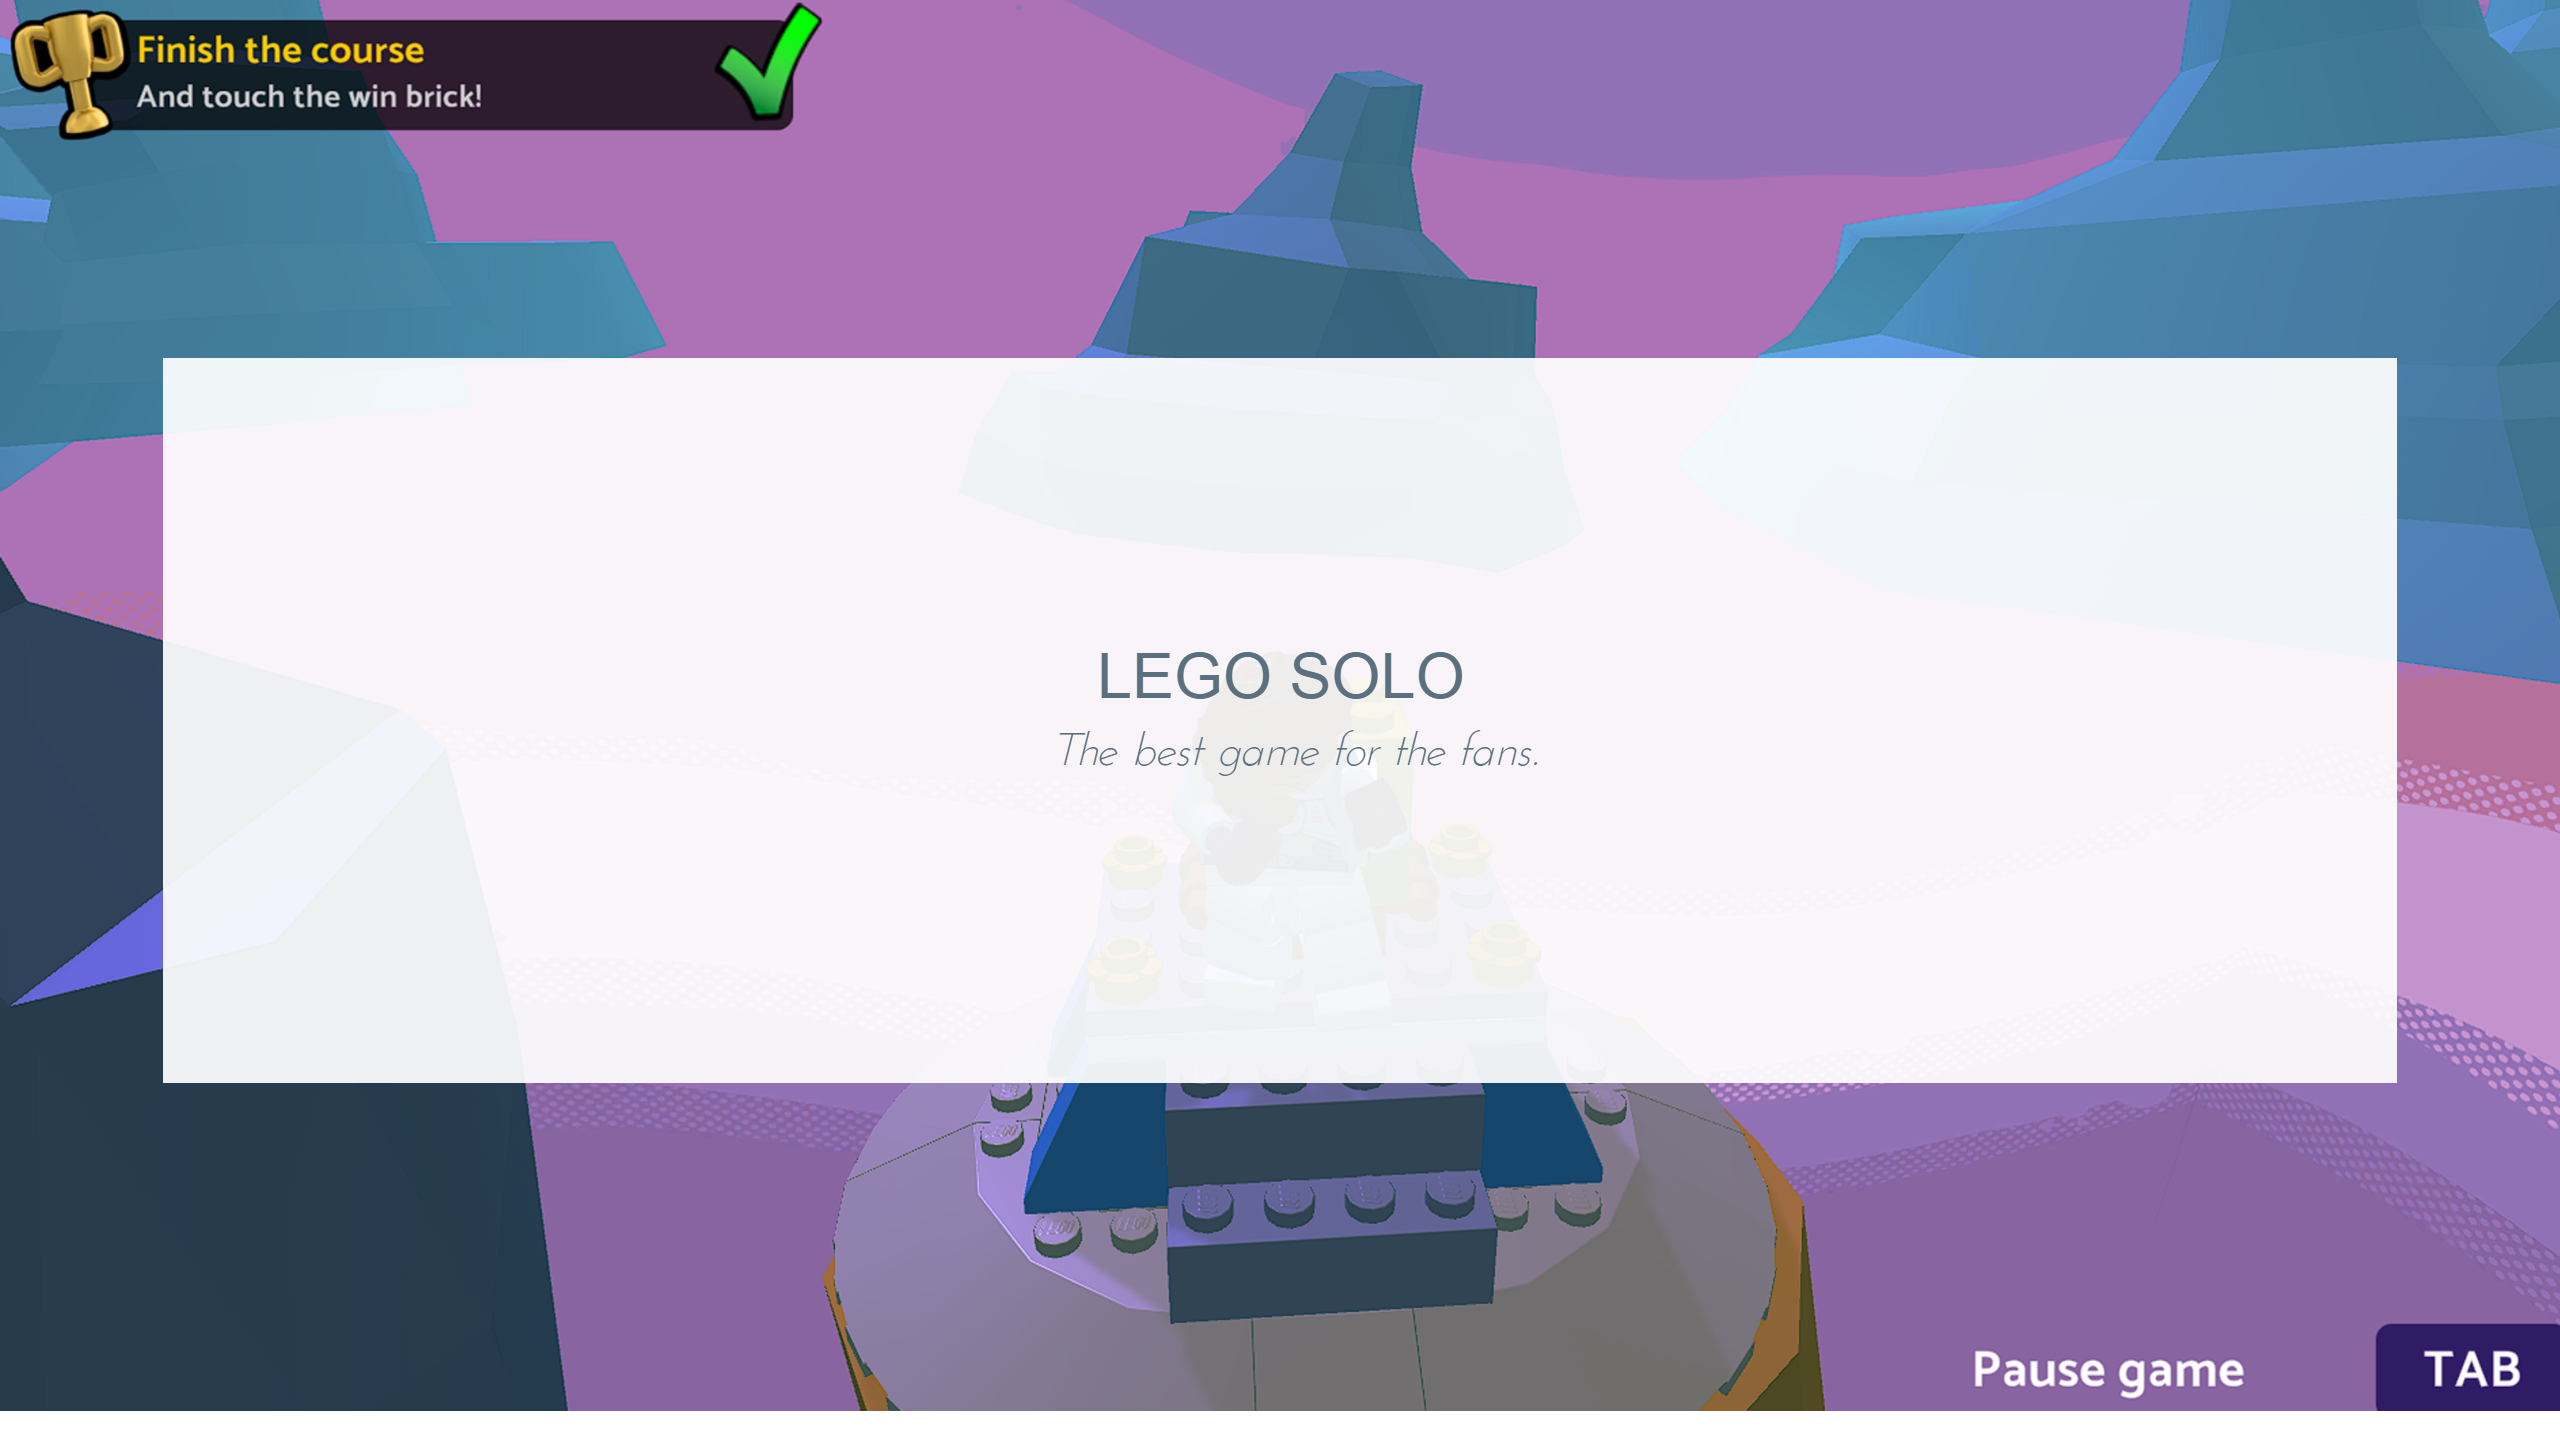 Lego solo